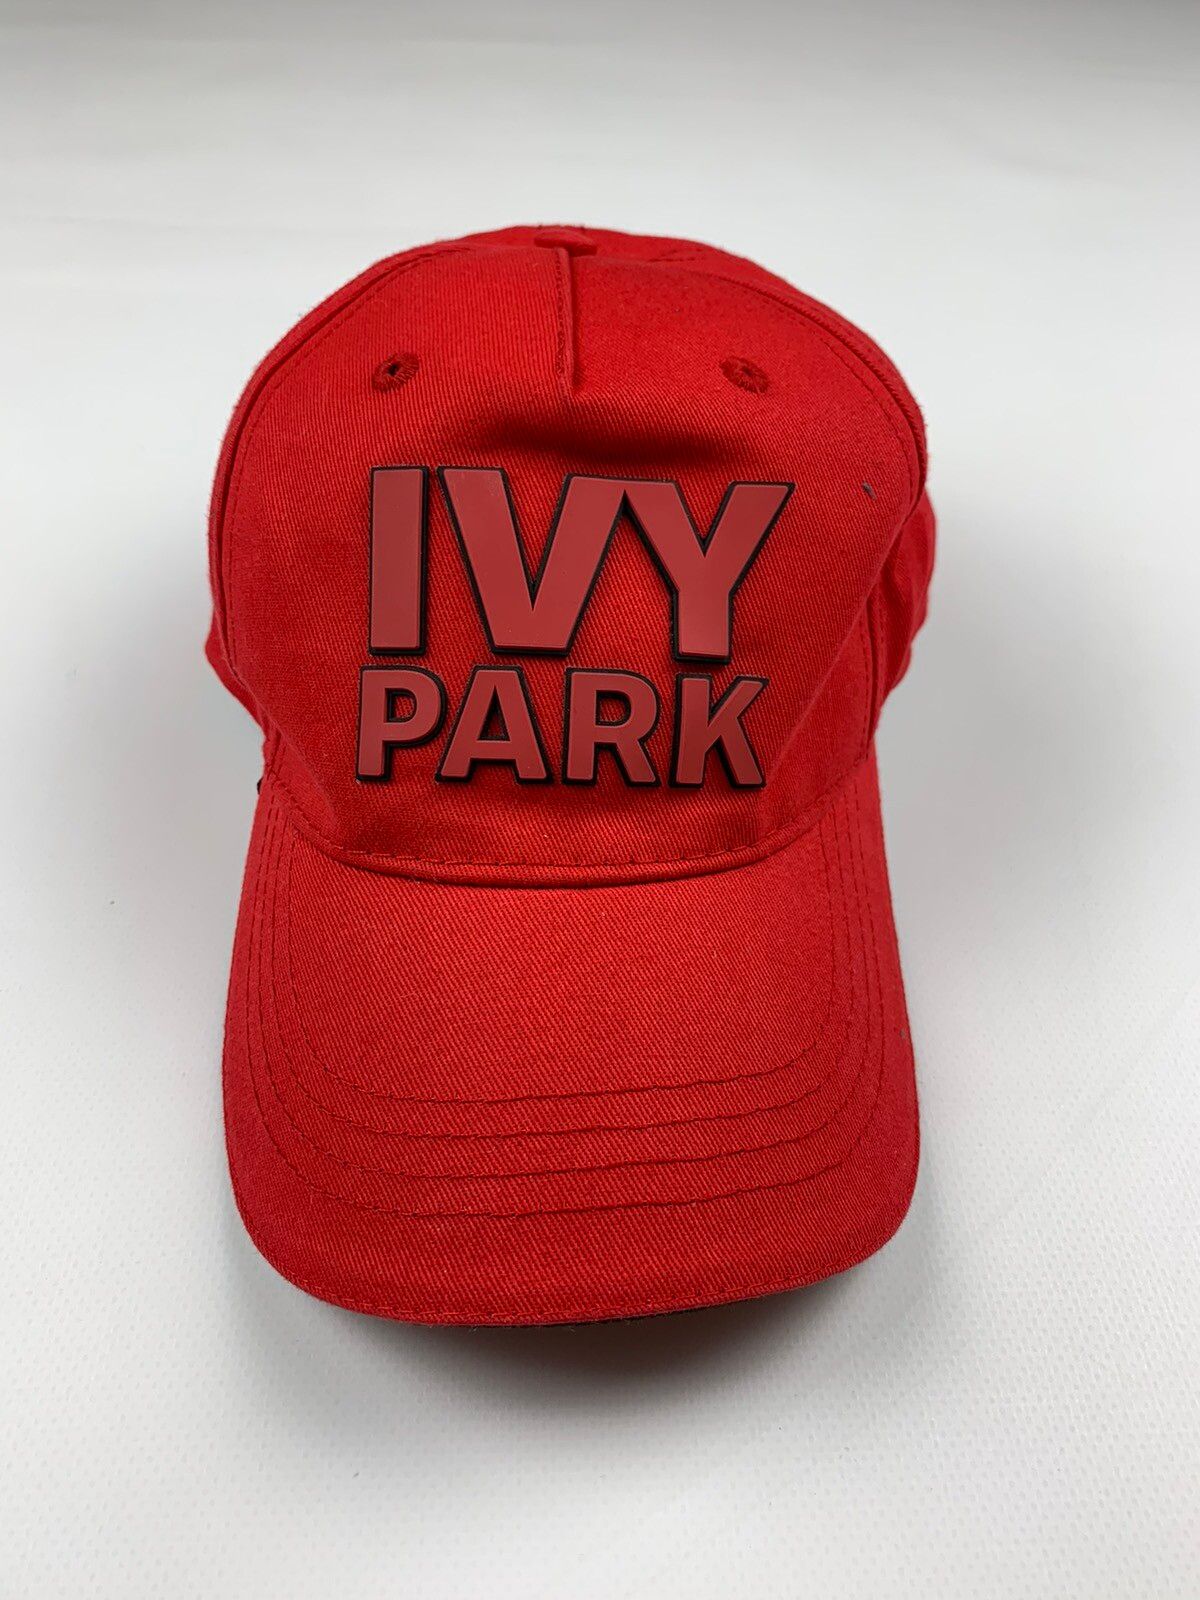 Ivy Park Ivy Park Cap Hat | Grailed